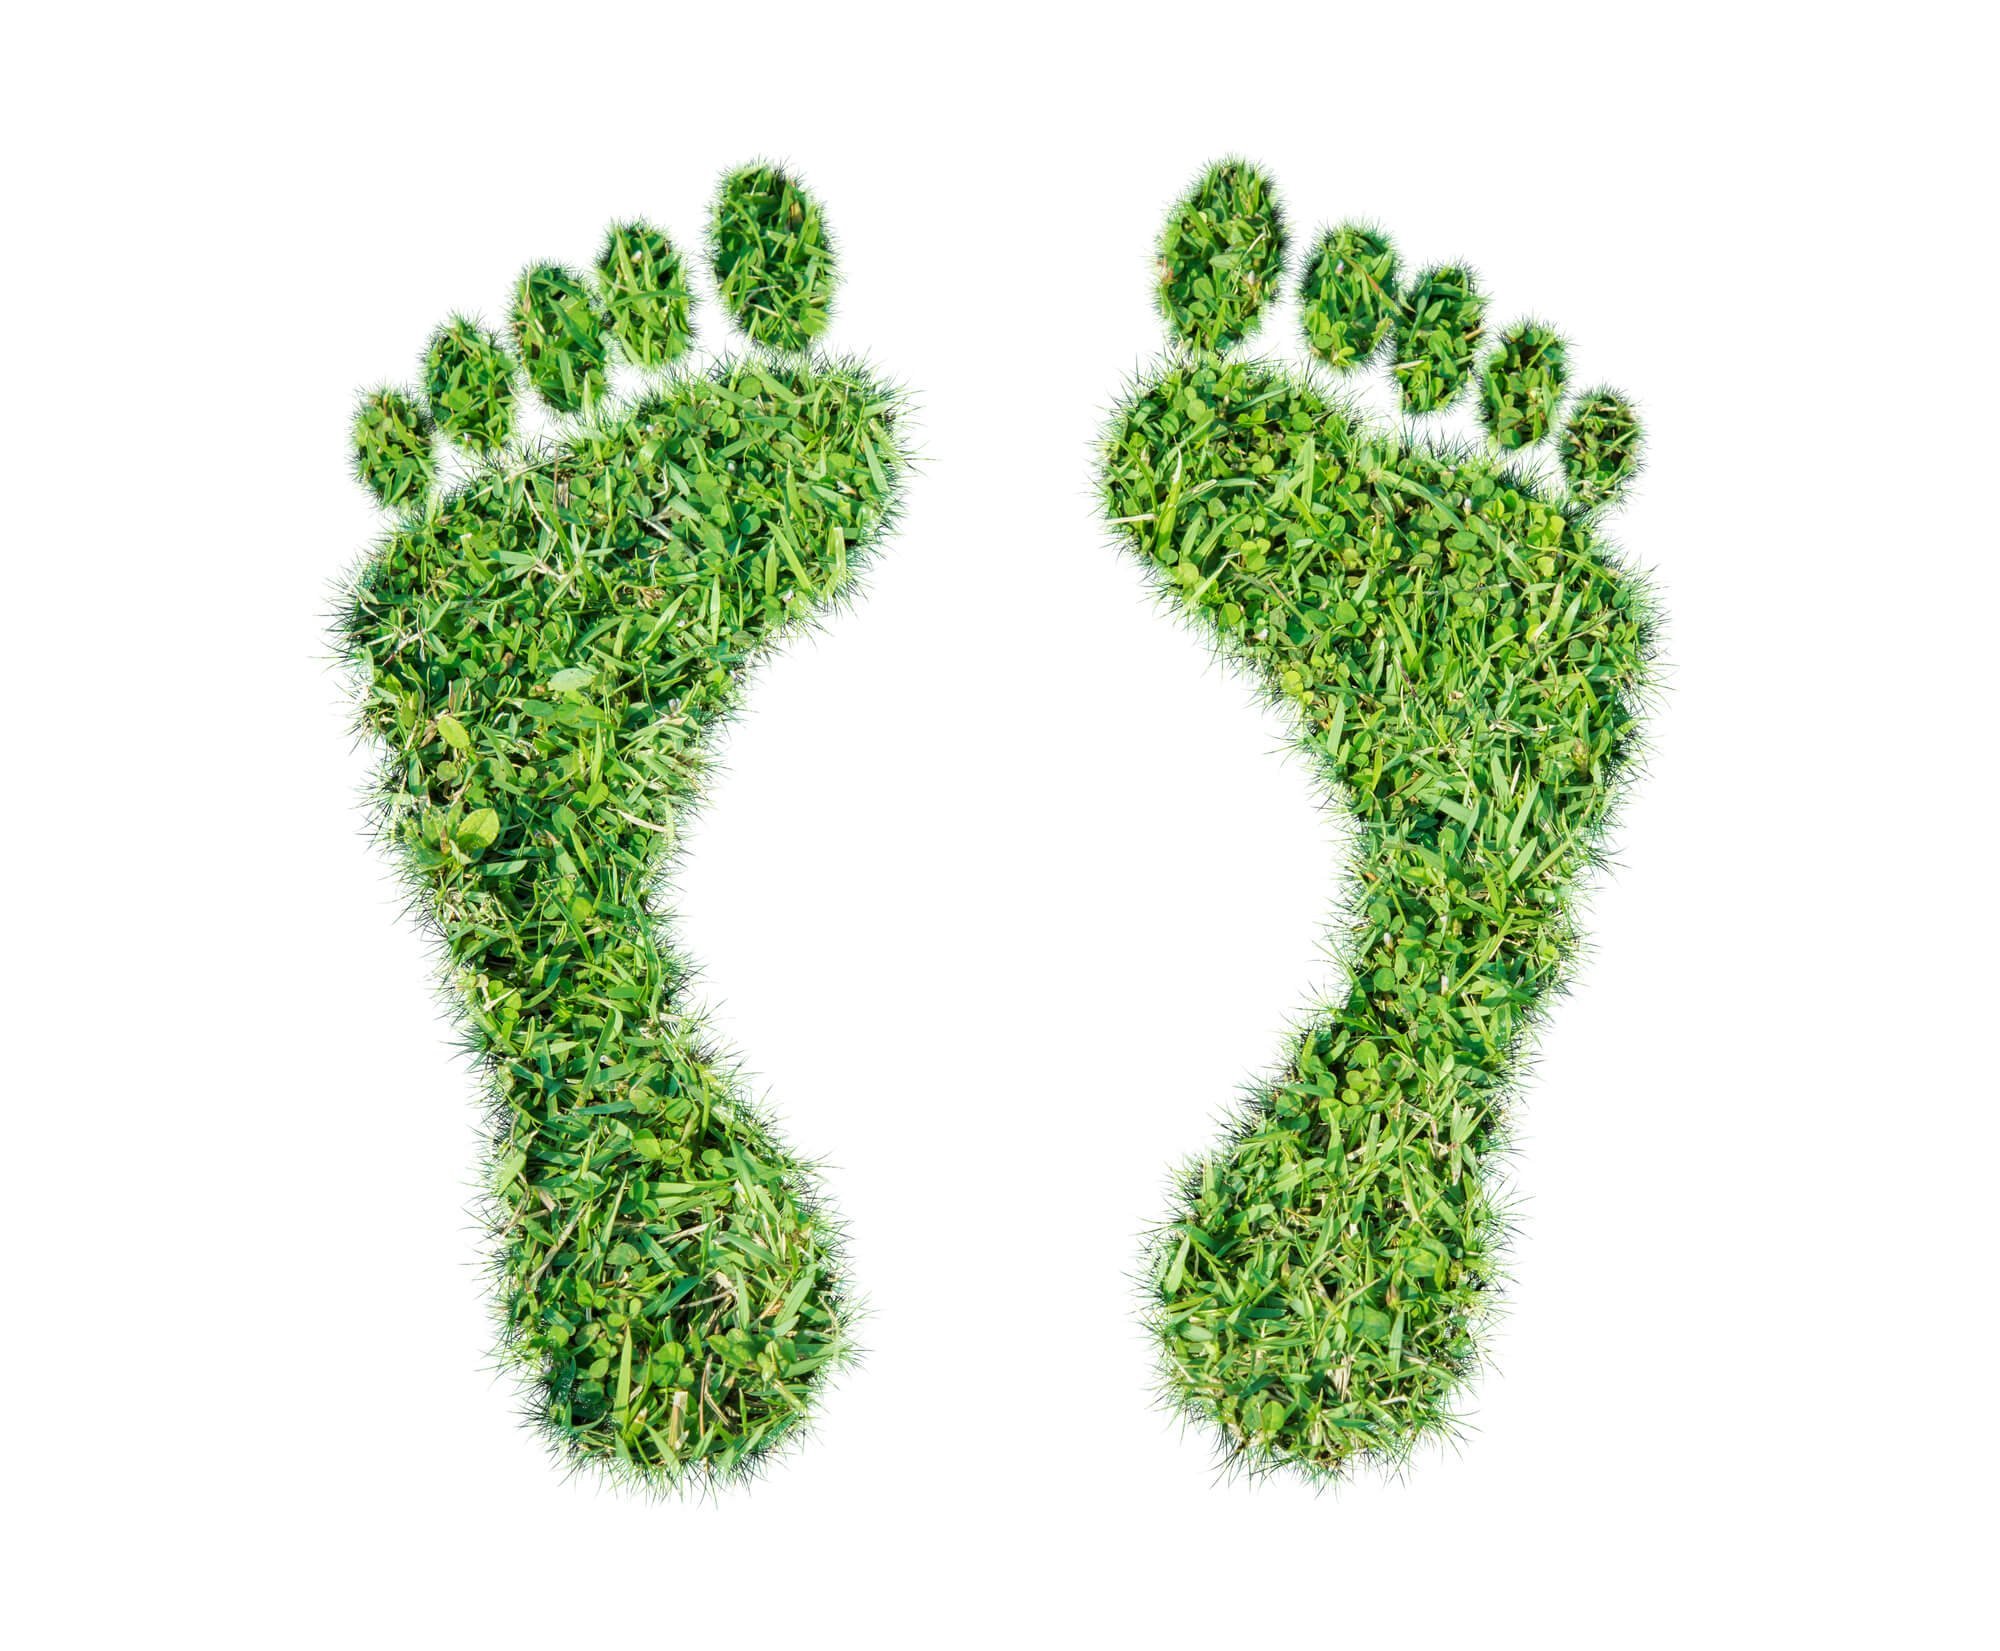 Green grass ecological footprint concept 